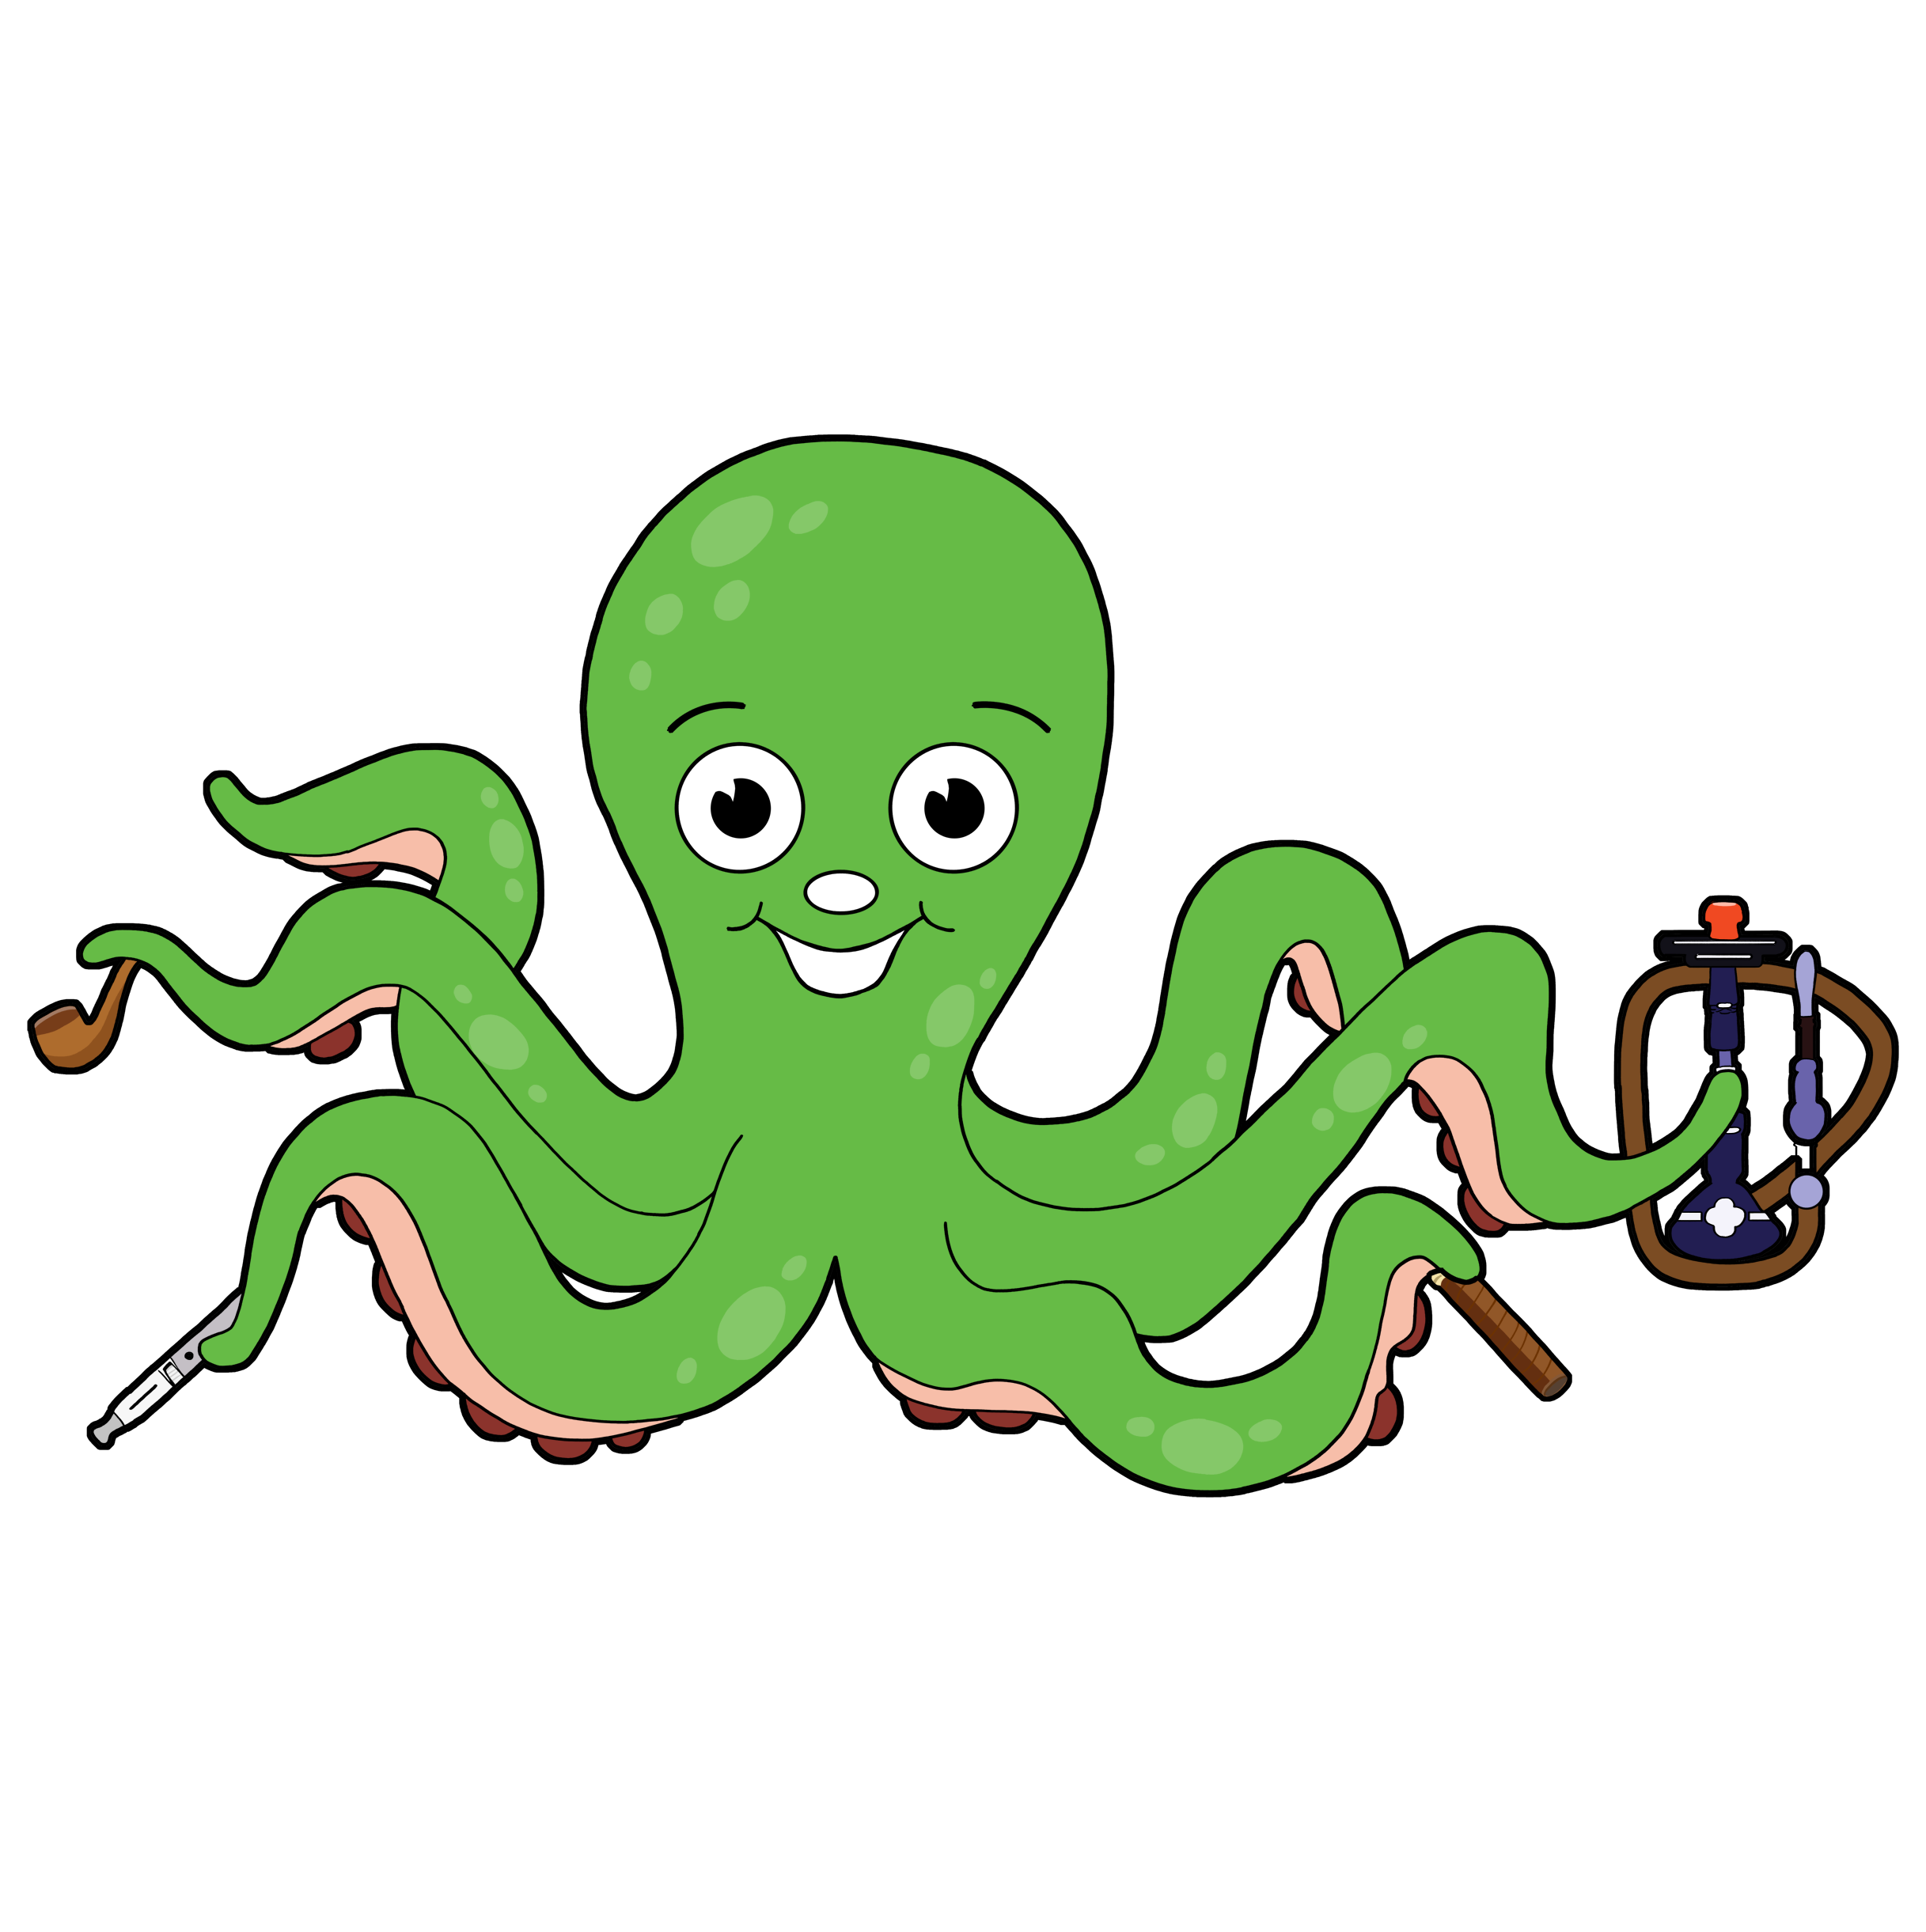 Happy Lou’s Smoke Shop